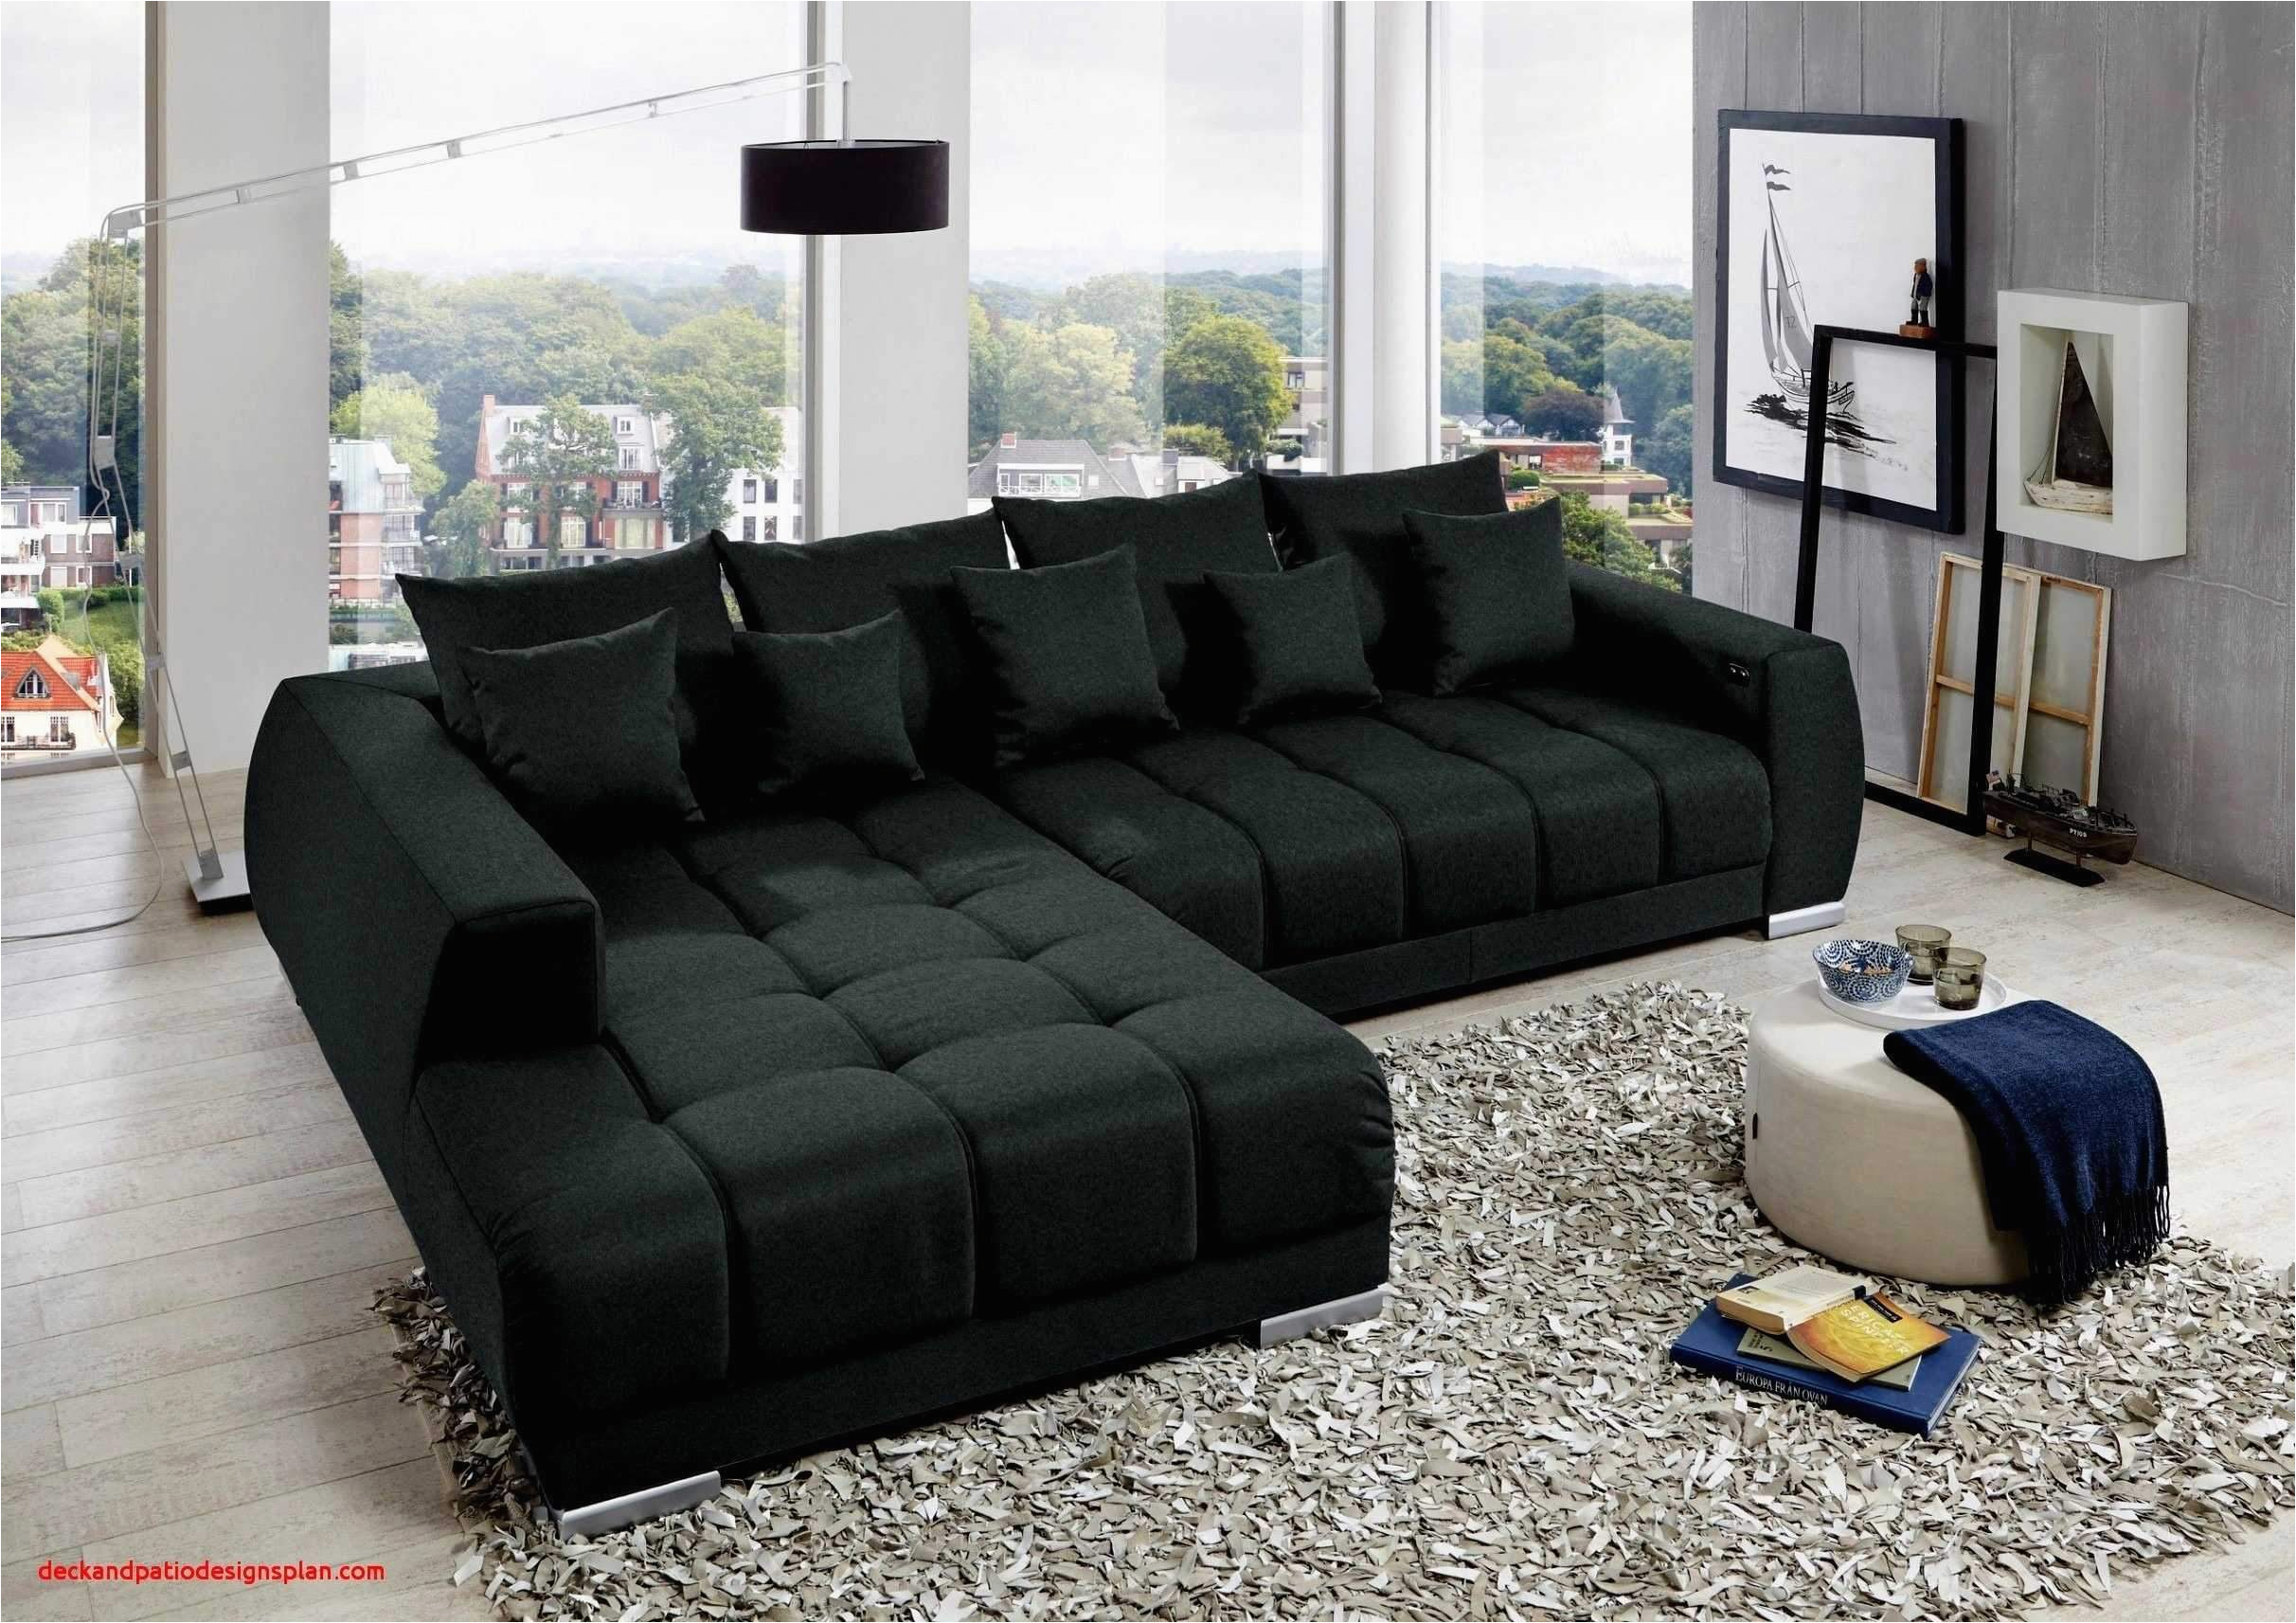 wohnzimmer couch leder luxus wohnzimmer couch leder elegant big sofa microfaser neu sofa of wohnzimmer couch leder